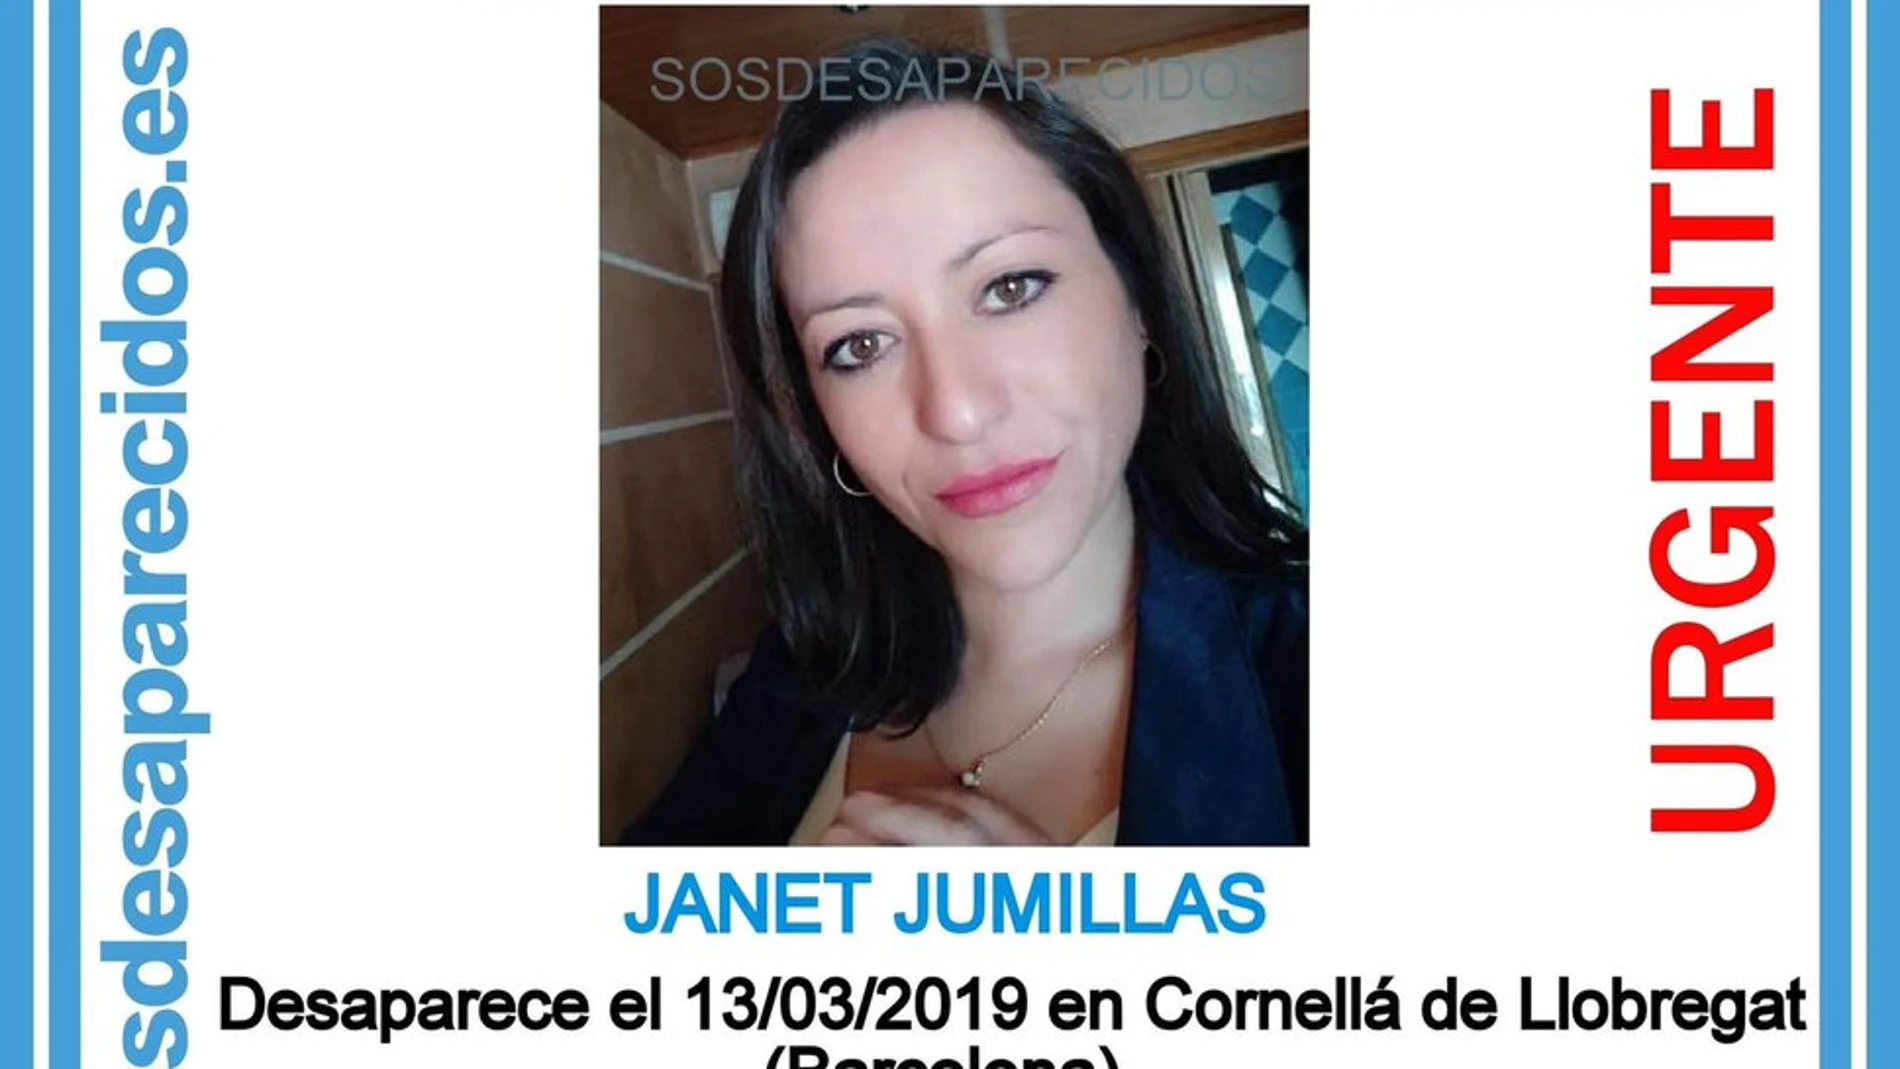 Janet Jumillas, la mujer de 39 años desaparecida en Cornellà